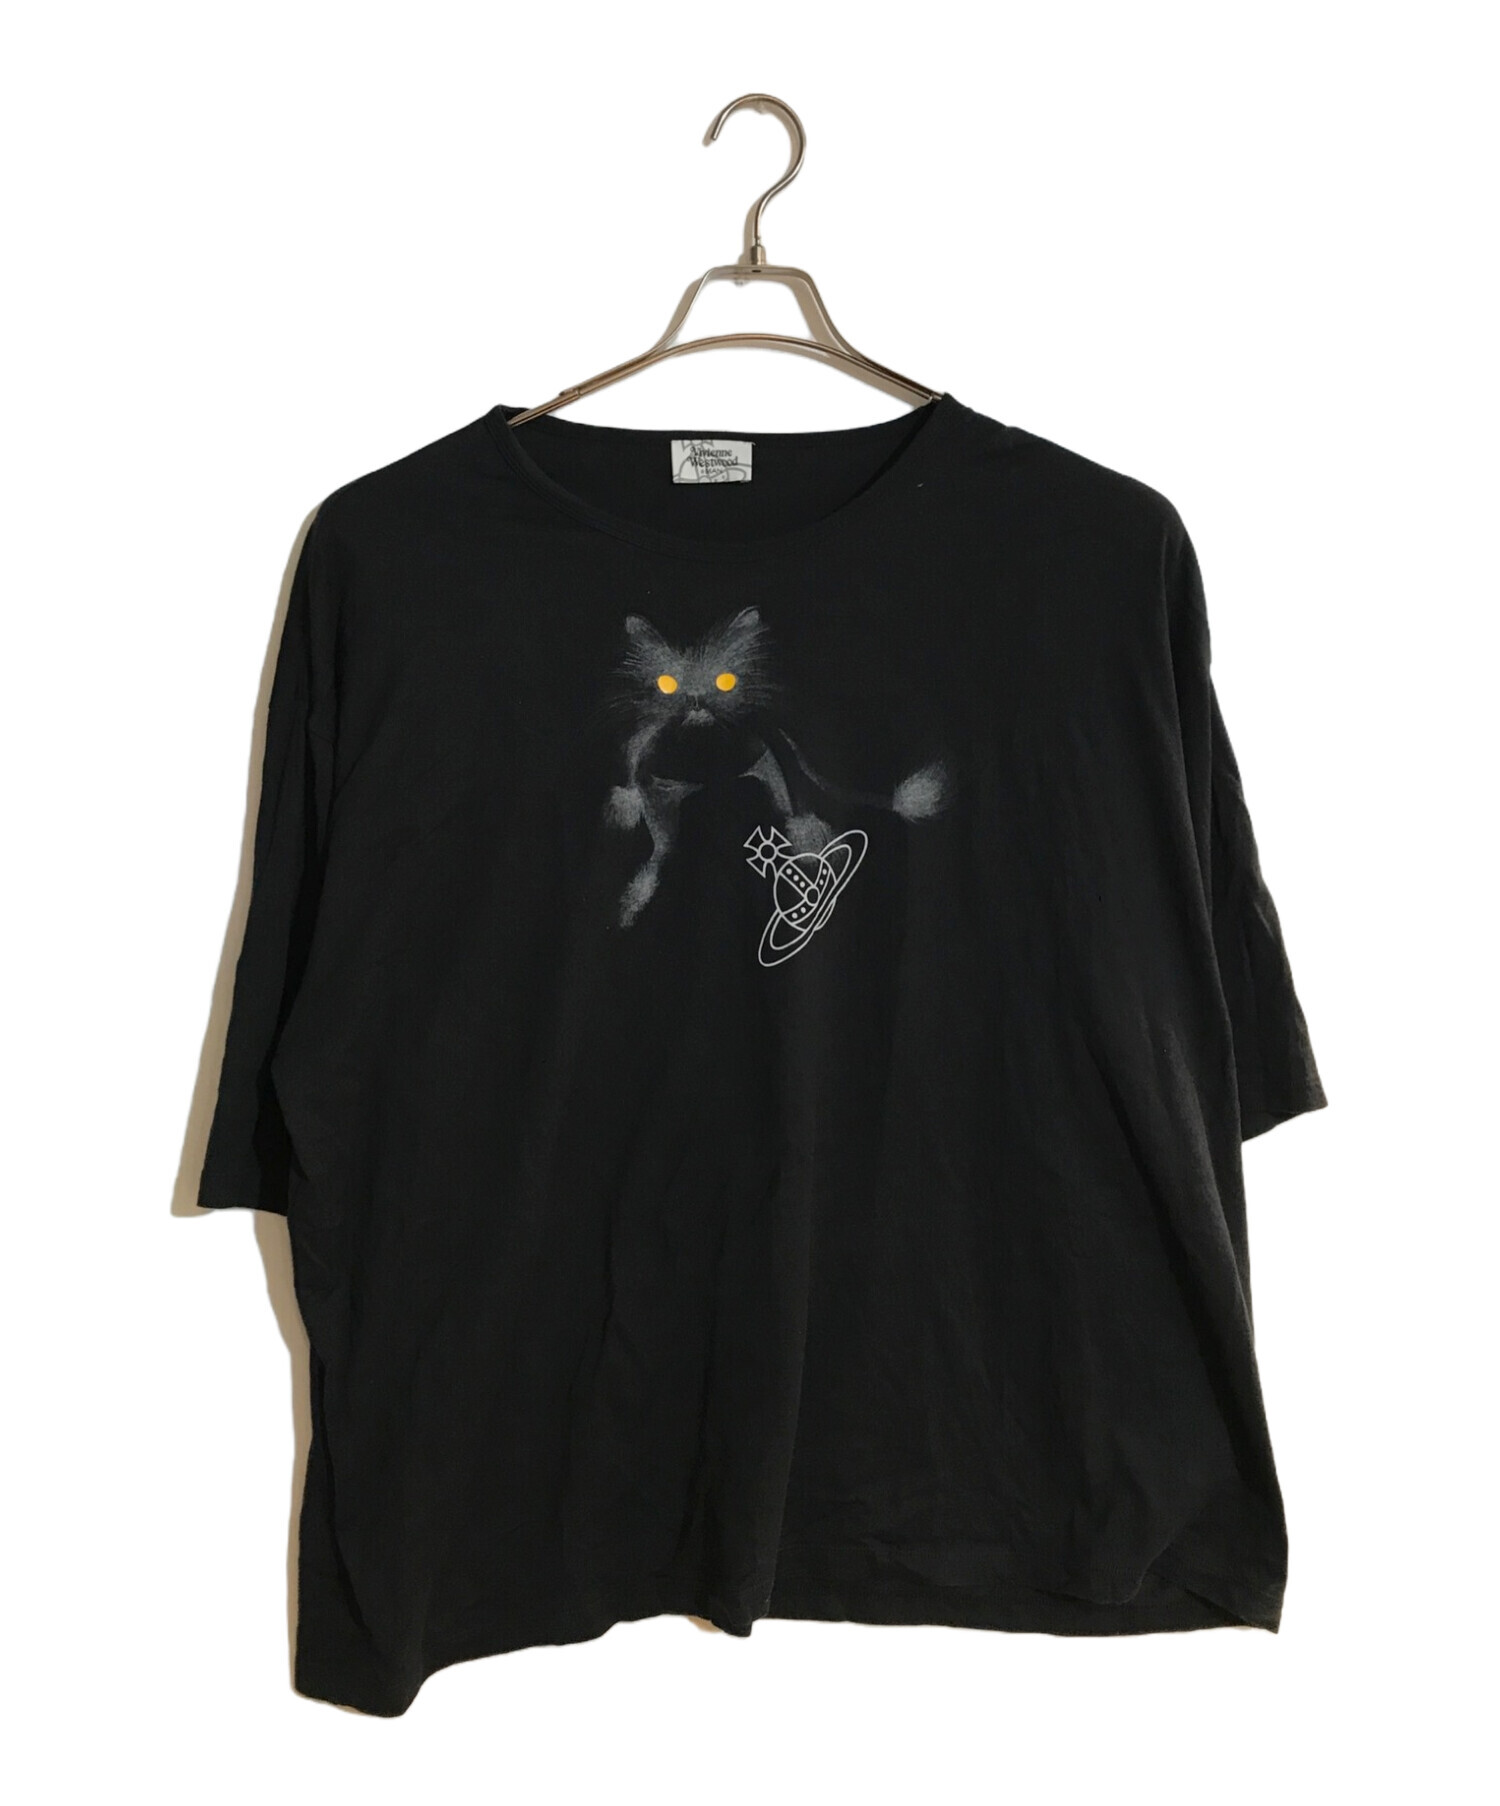 Vivienne Westwood man (ヴィヴィアン ウェストウッド マン) ‘PIDDLE CAT’ BIG  T-SHIRTS/ピドゥルキャットビッグティーシャツ ブラック サイズ:Free